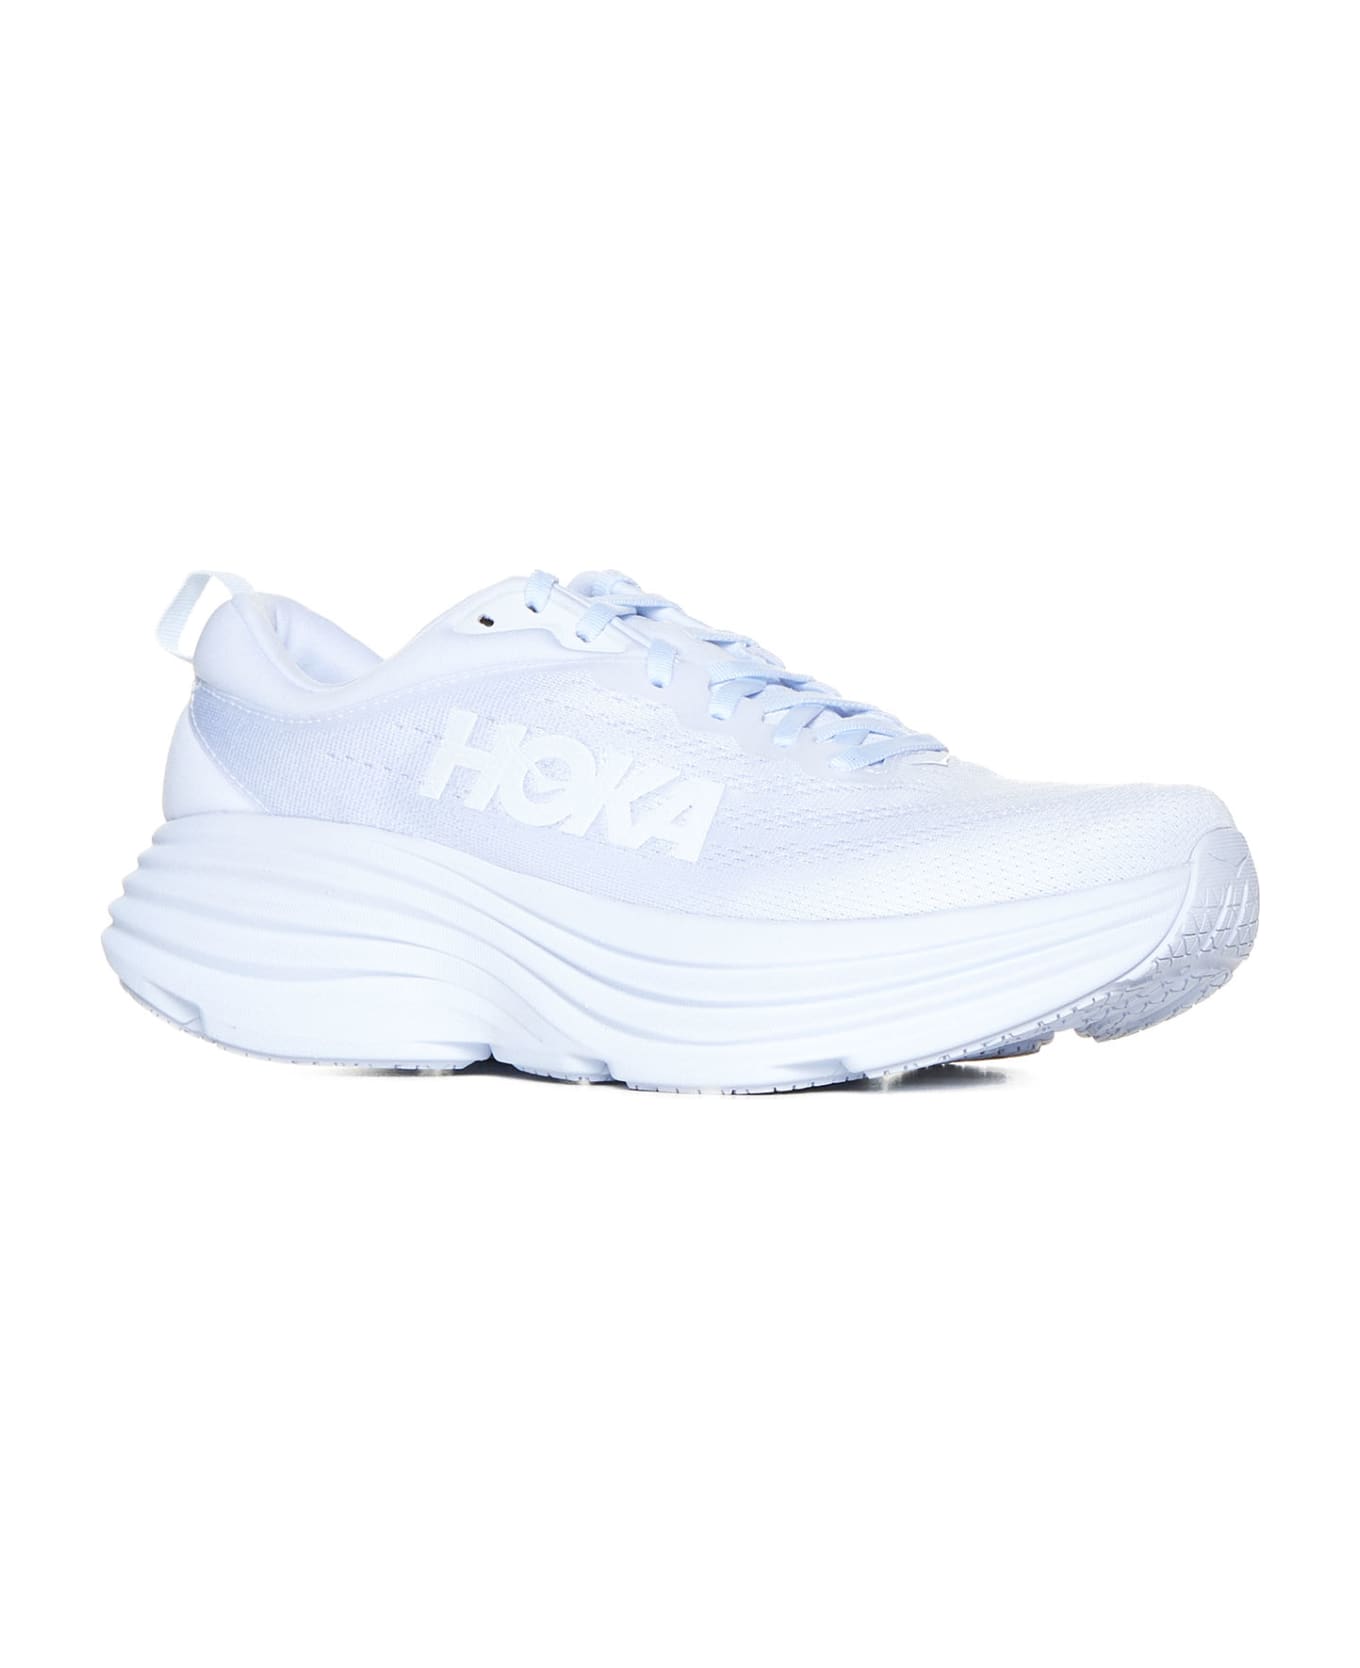 Hoka Sneakers - White white